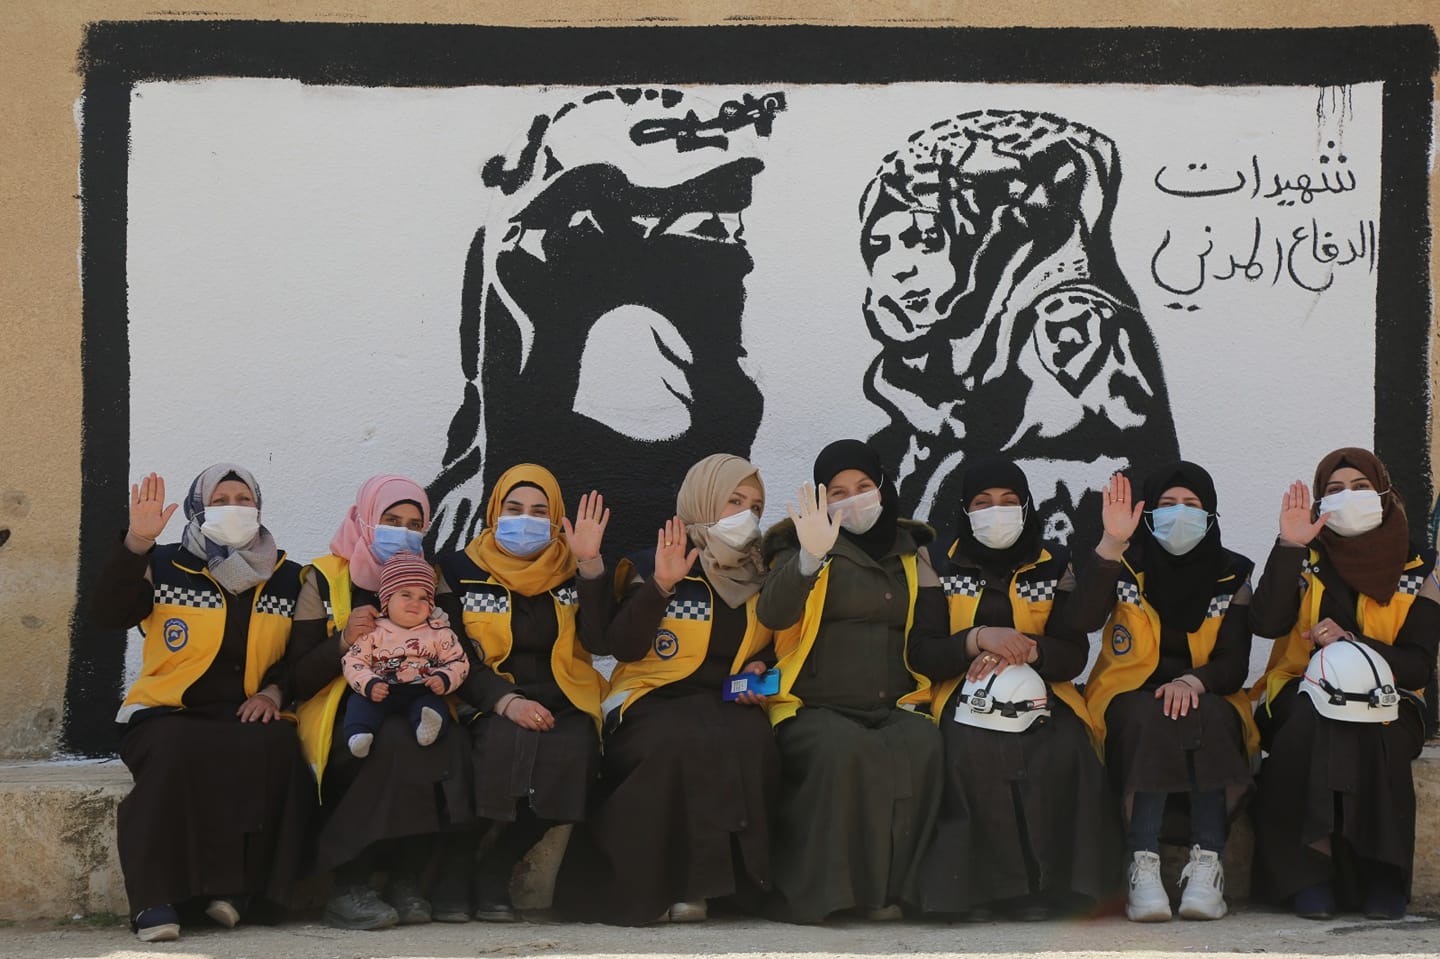 وجَّهت قوى سورية وفعاليات محلية تحية تقدير لنساء سورية الثائرات في اليوم العالمي للمرأة المصادف ليوم الثامن من آذار كل عام.